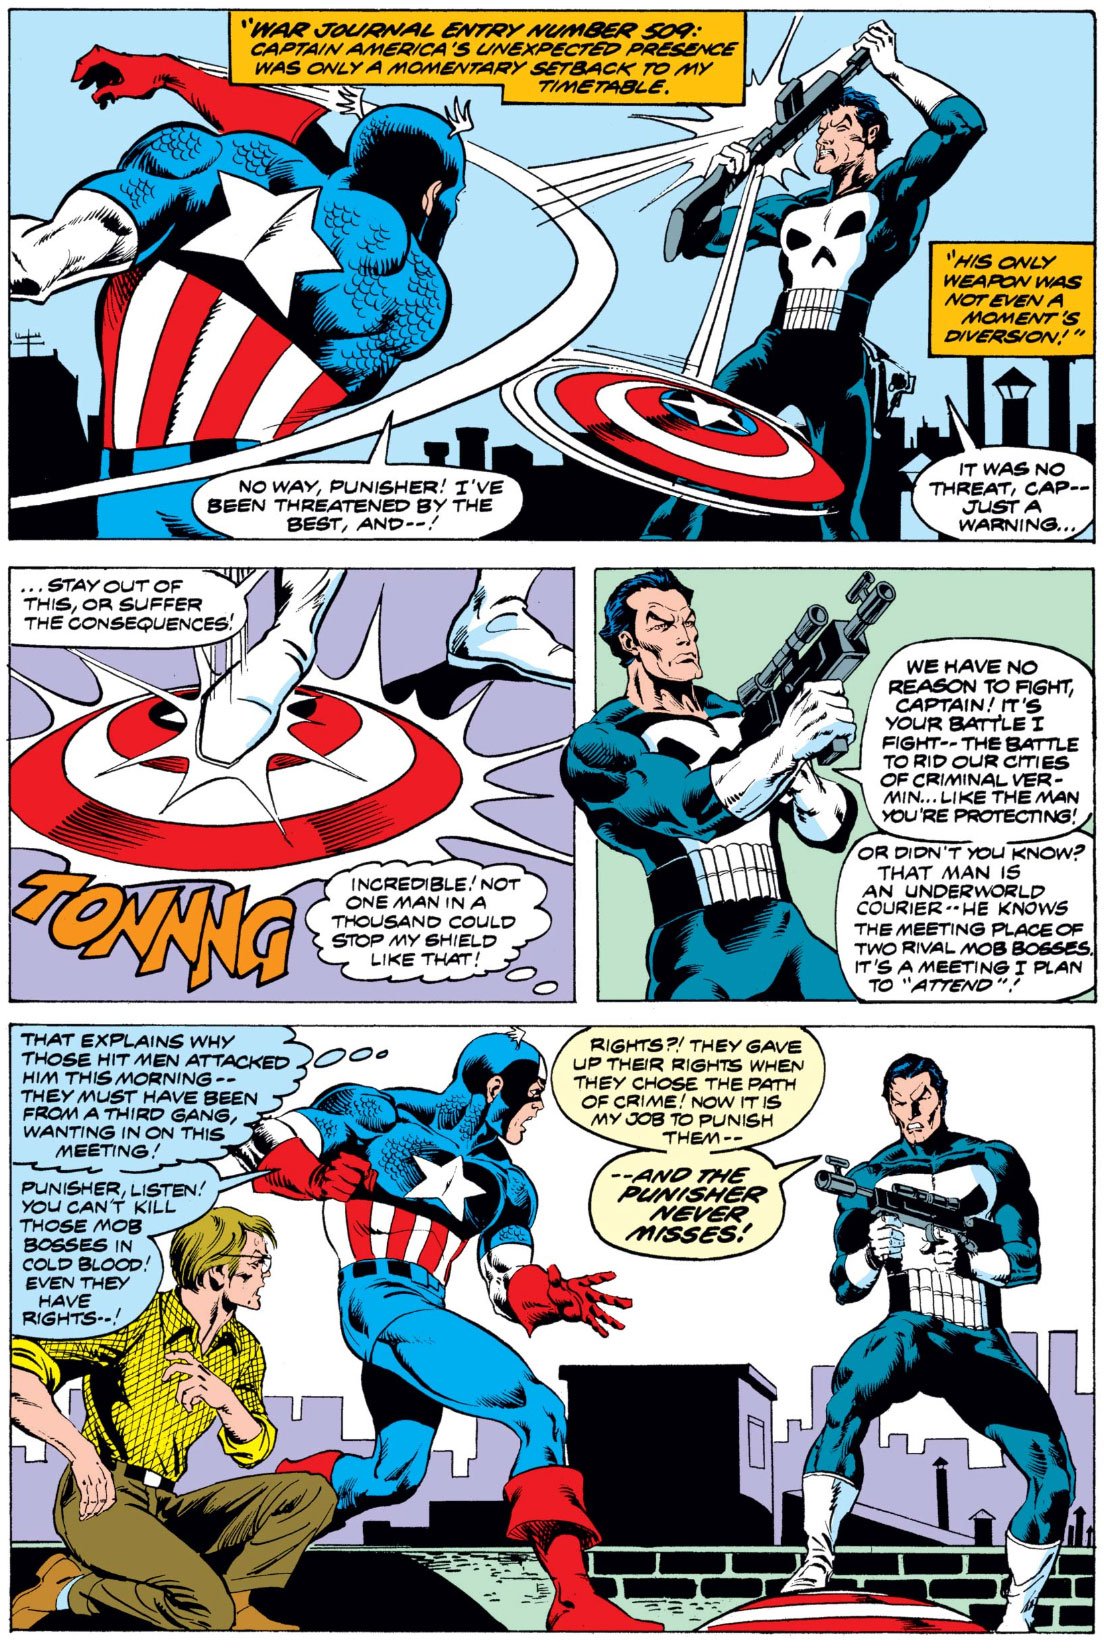 Captain America #241.